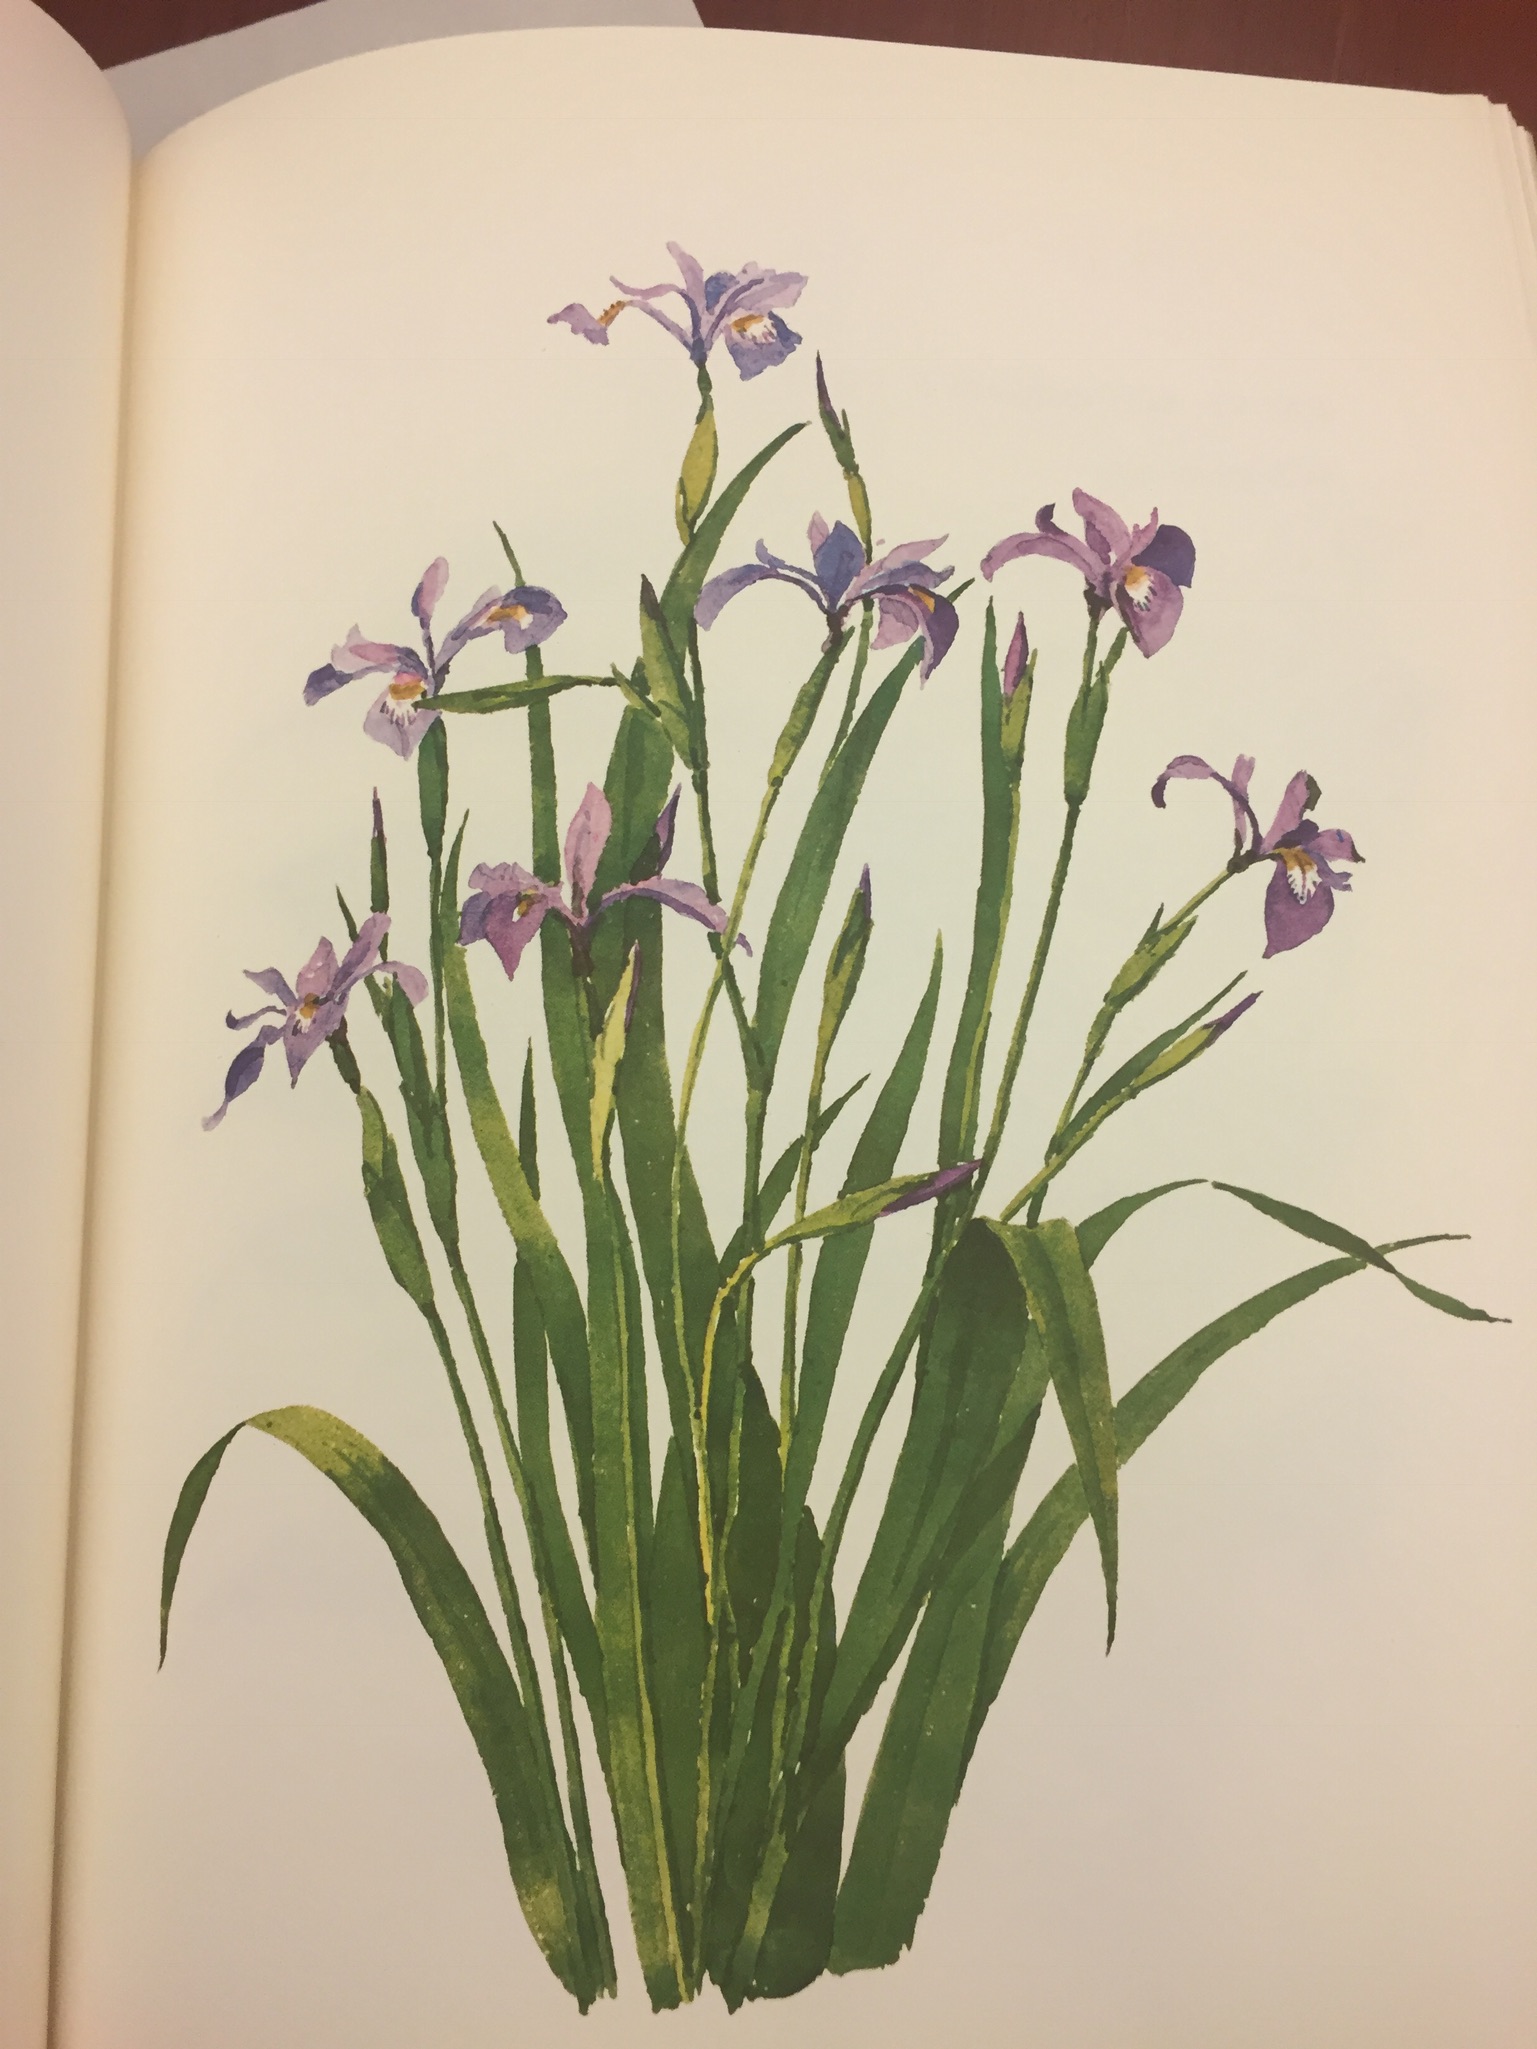 T. Merrill Prentice. Weeds & Wildflowers of Eastern North America, 1973. Minneapolis Athenaeum 